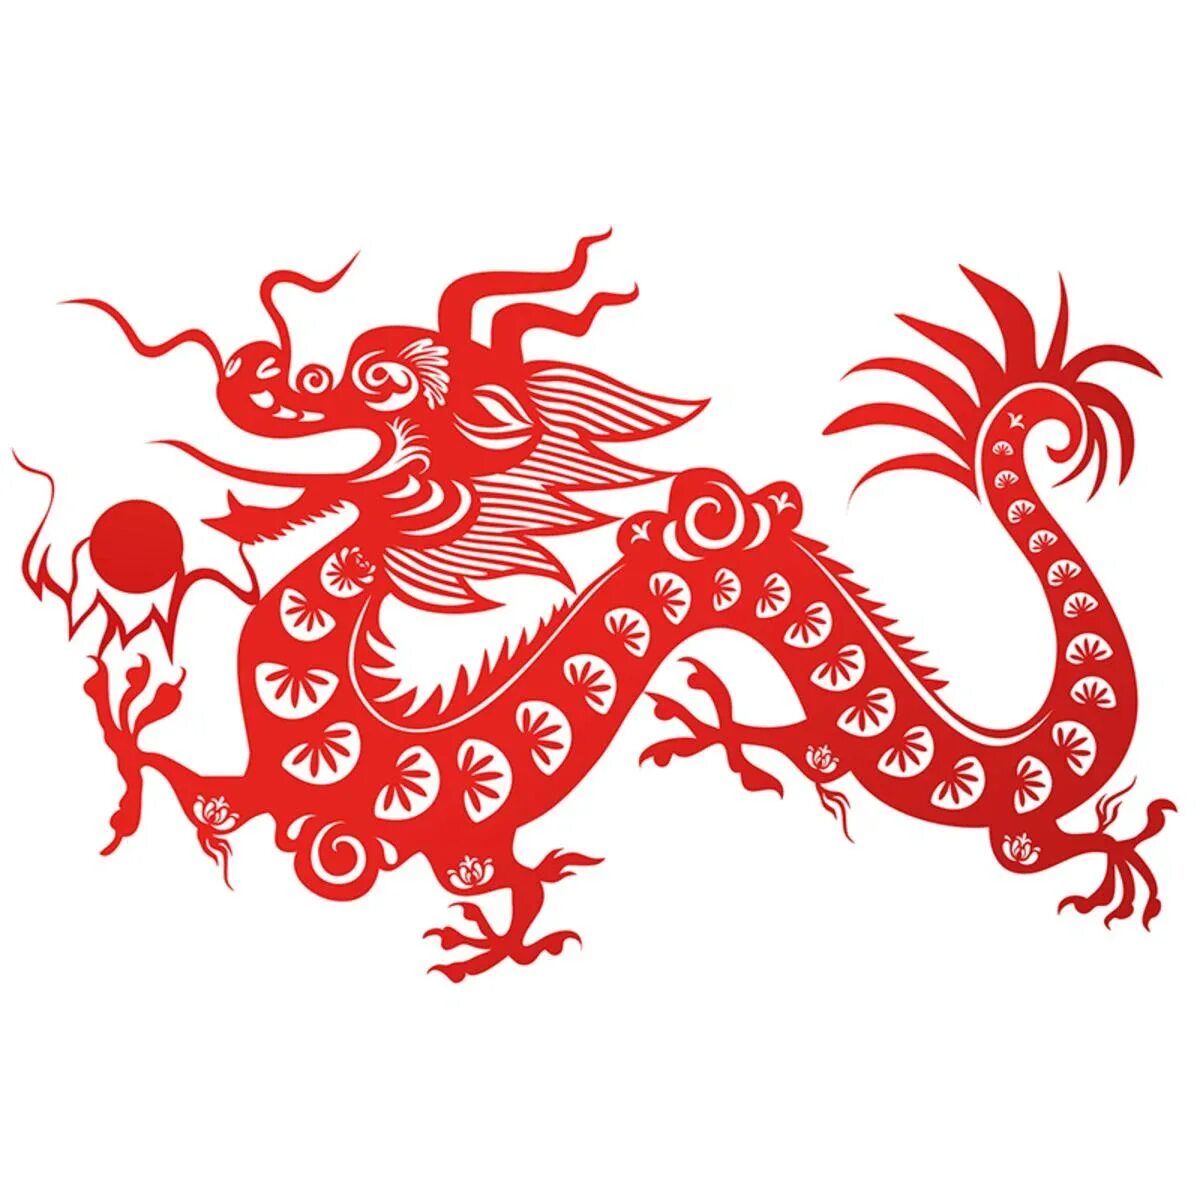 Дракон символ чего. Символы Китая. Художественный символ Китая. Символ Китая дракон. Красный китайский дракон.